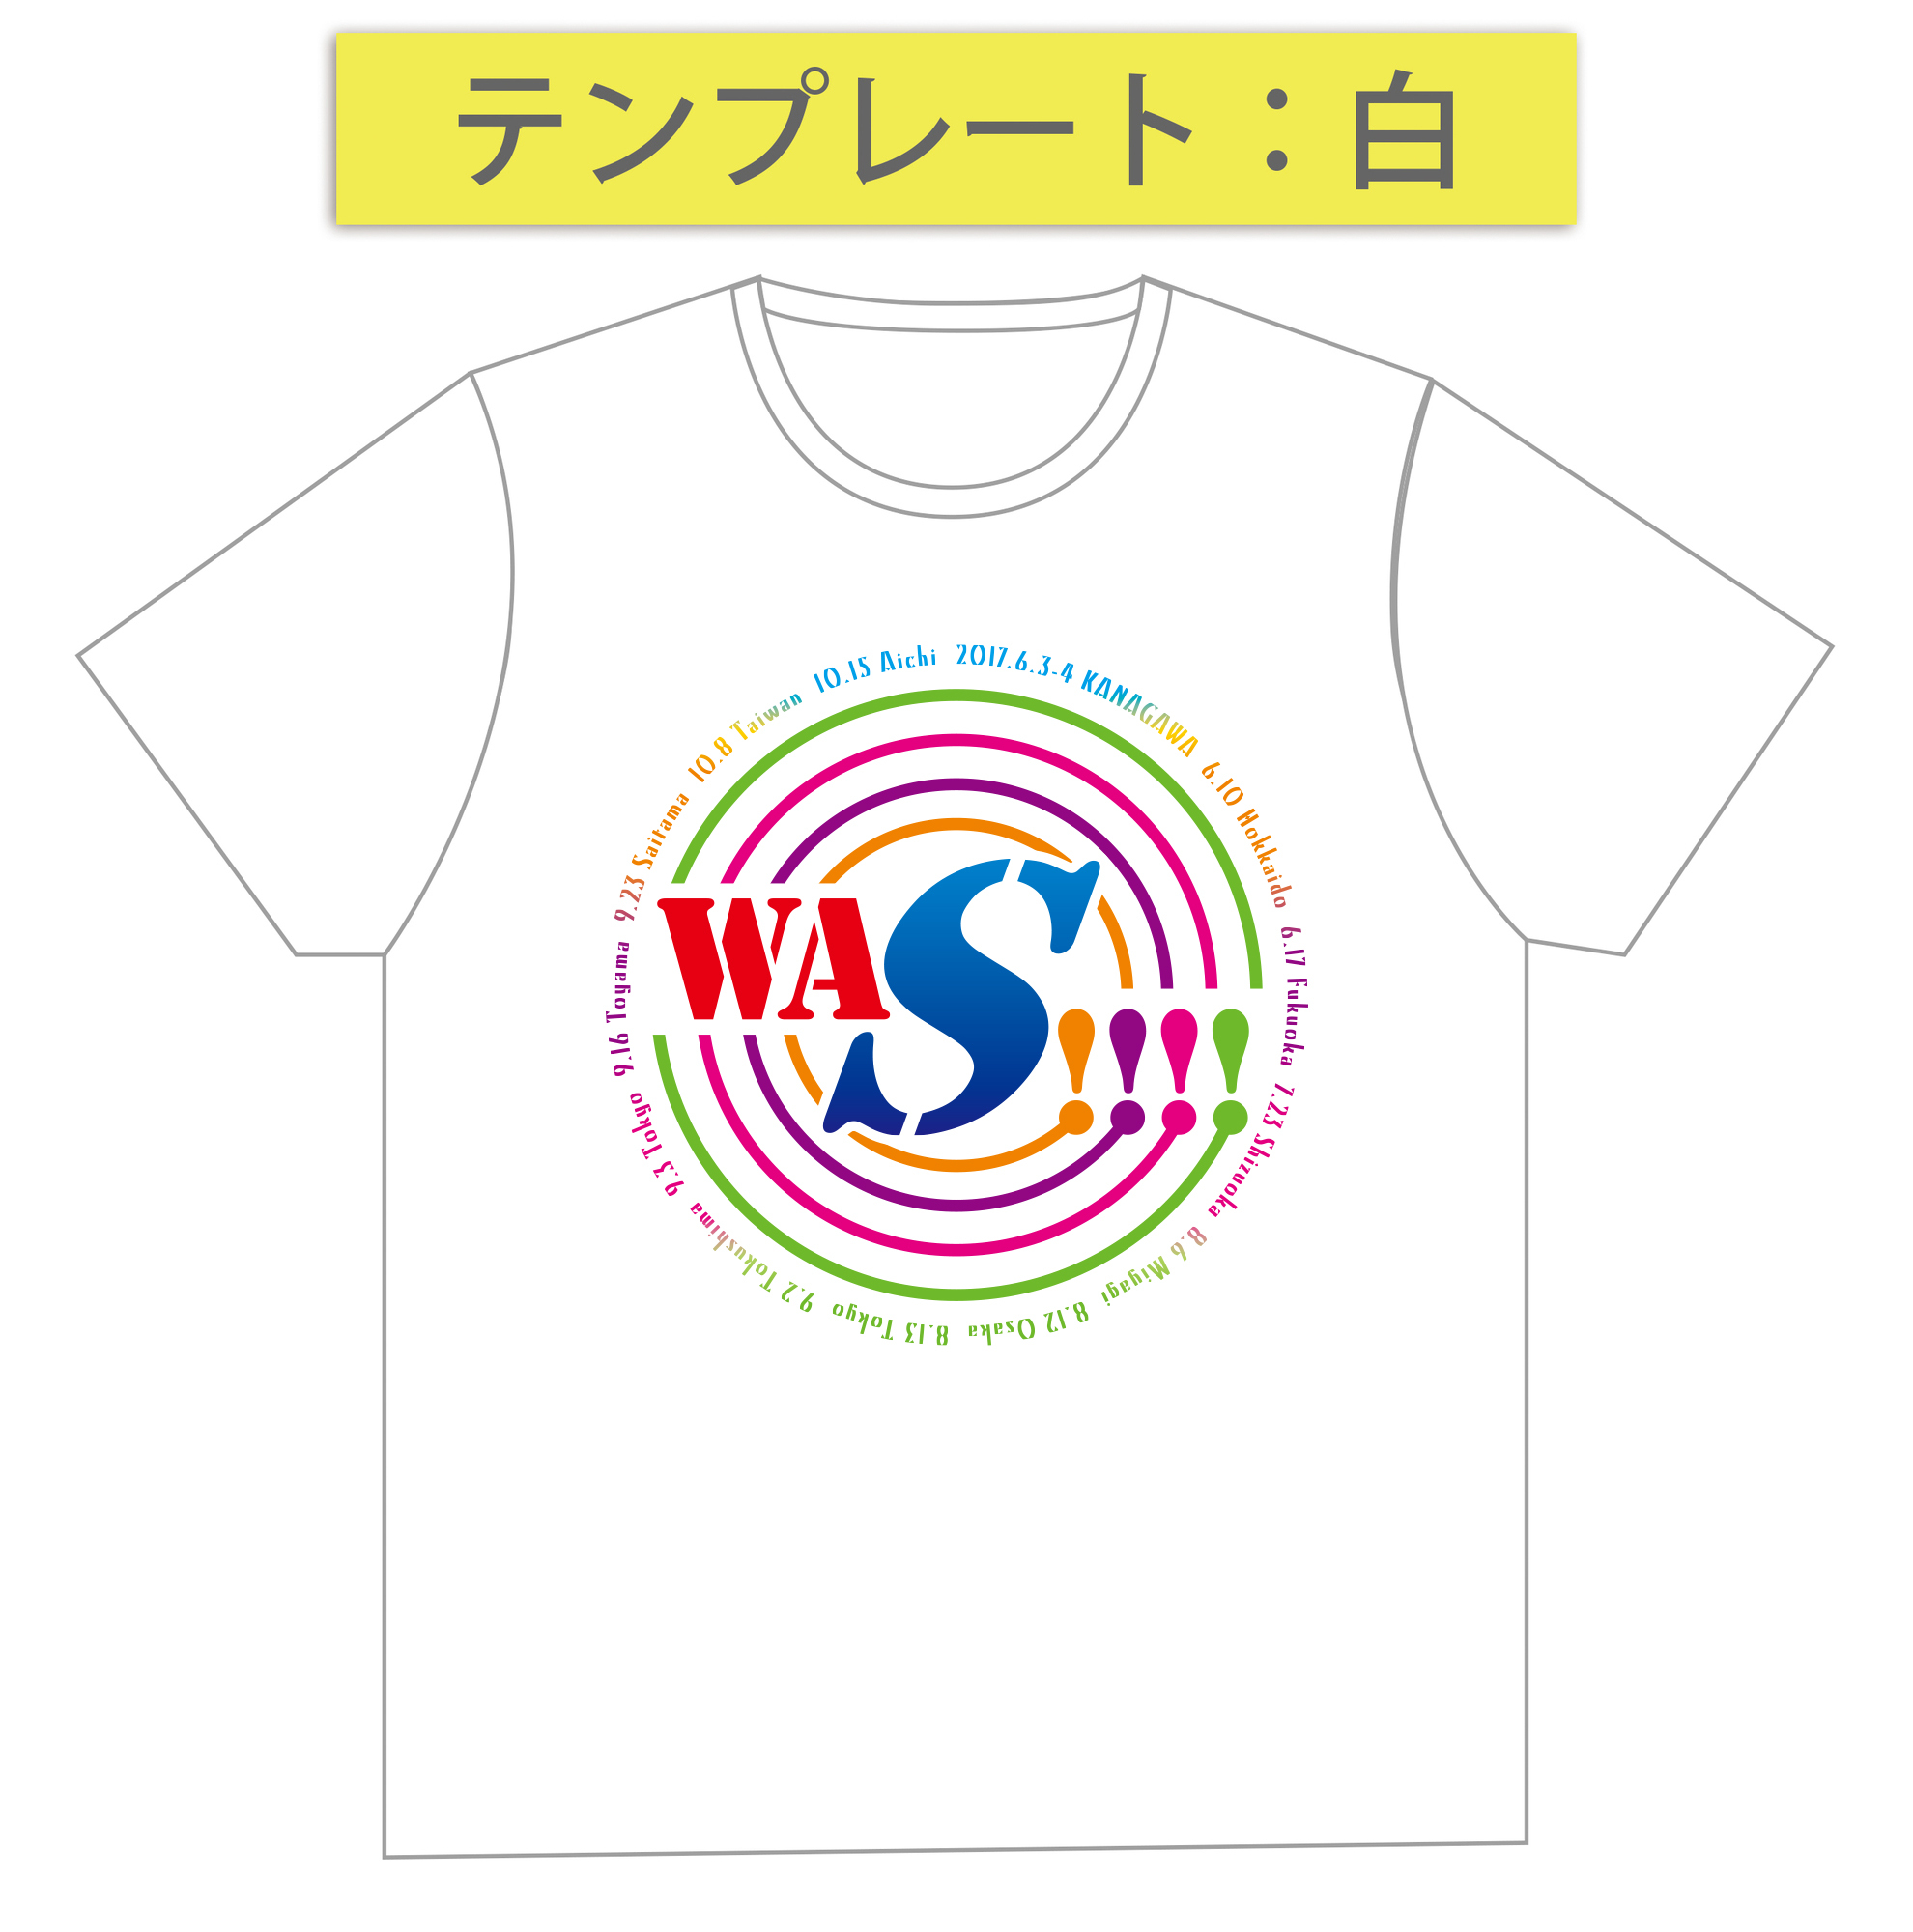 Tshirt_design01